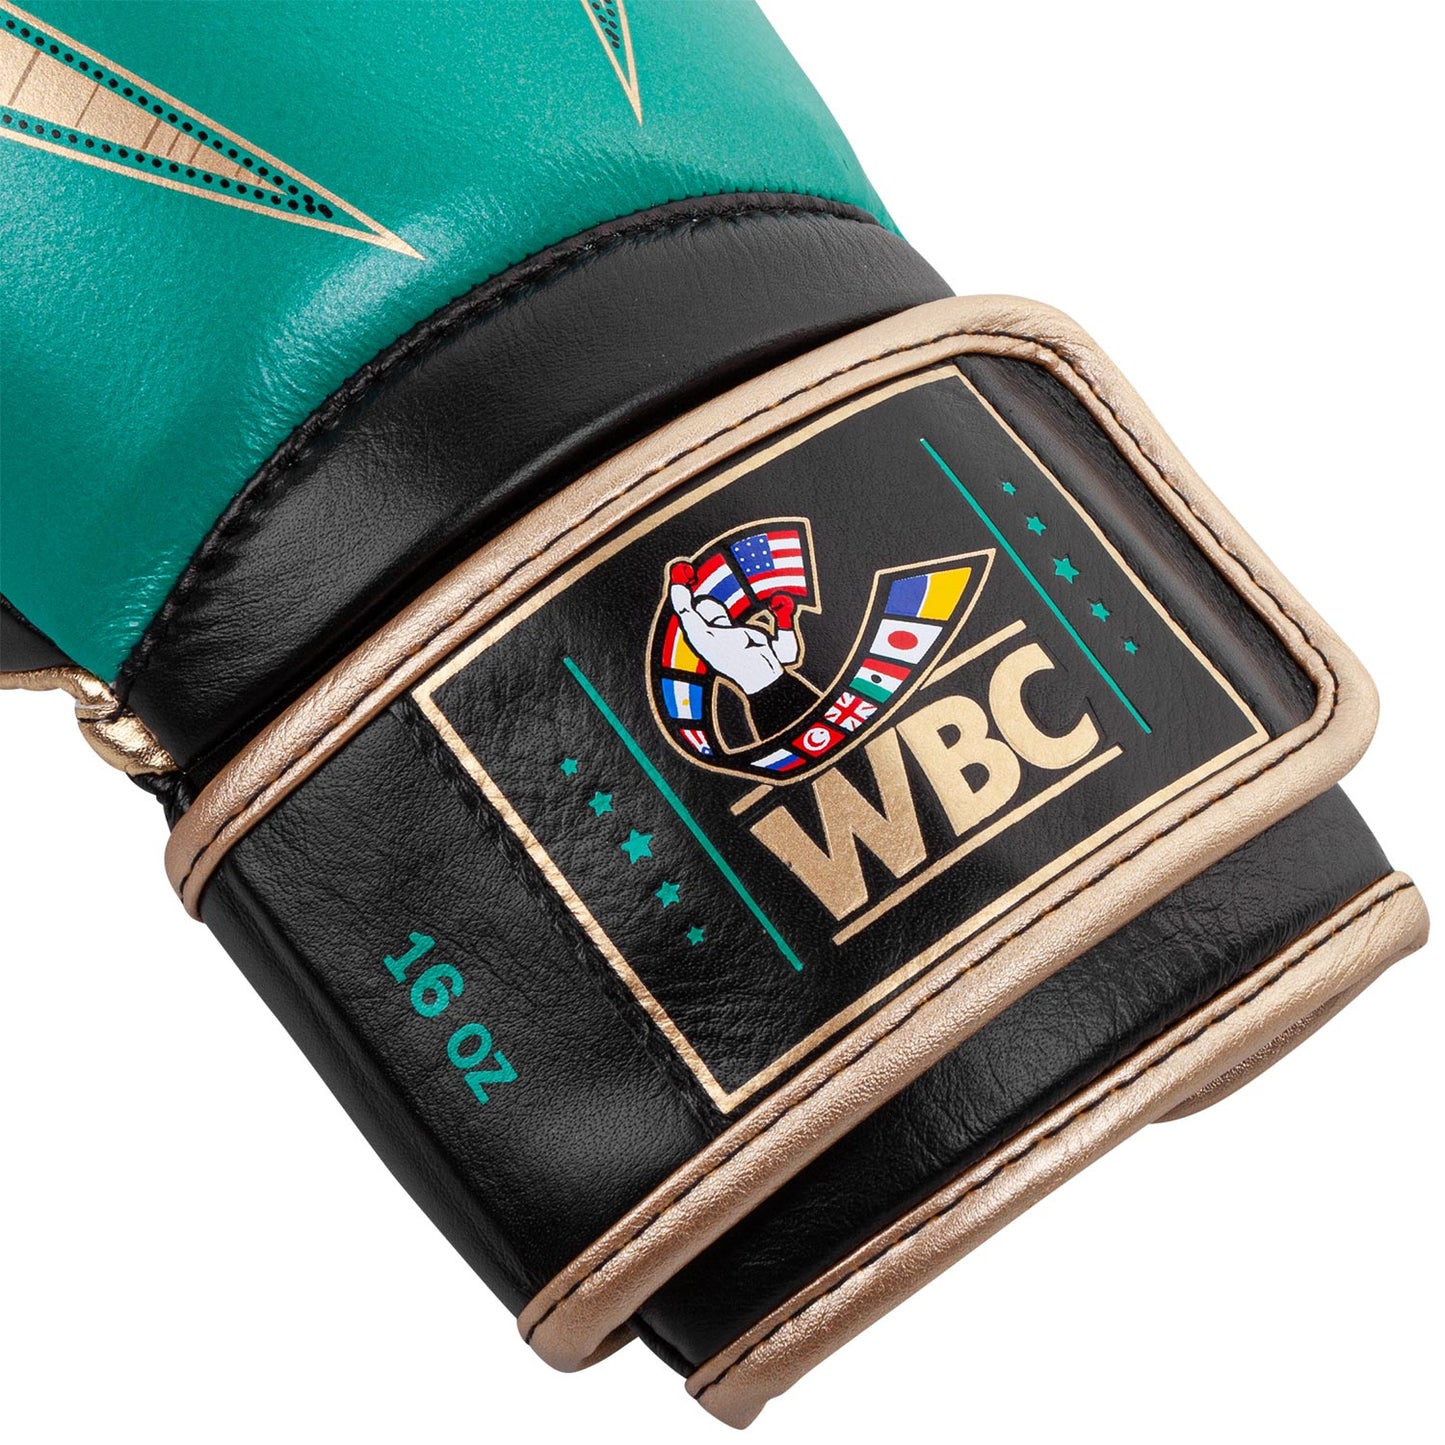 Guantes de Boxeo profesional Venum Giant 2.0 - Edición limitada WBC - Velcro - Verde metálico/Oro